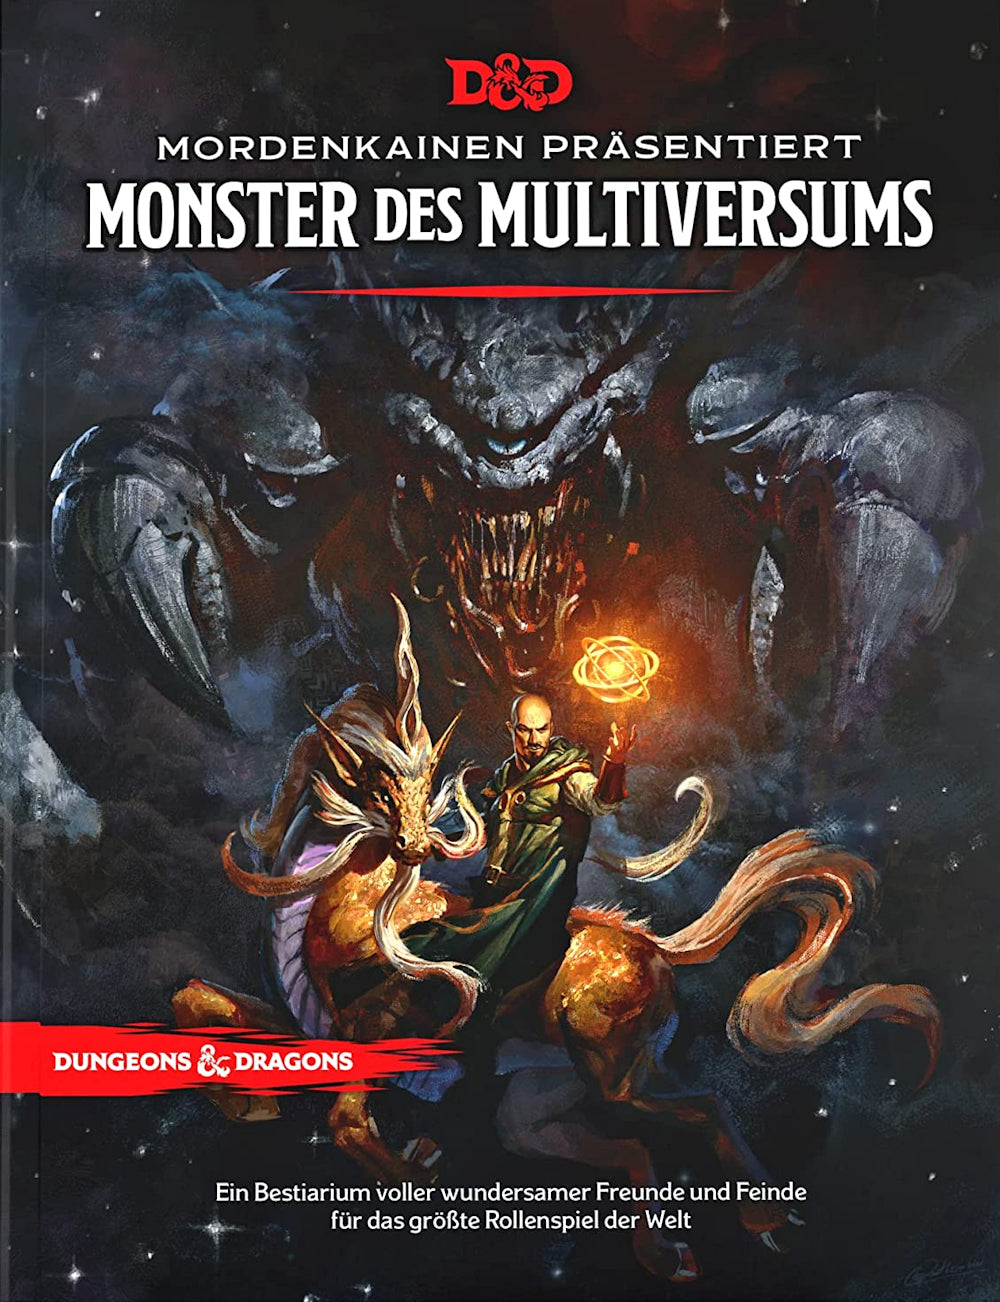 D&D Mordenkainen präsentiert Monster des Multiversums